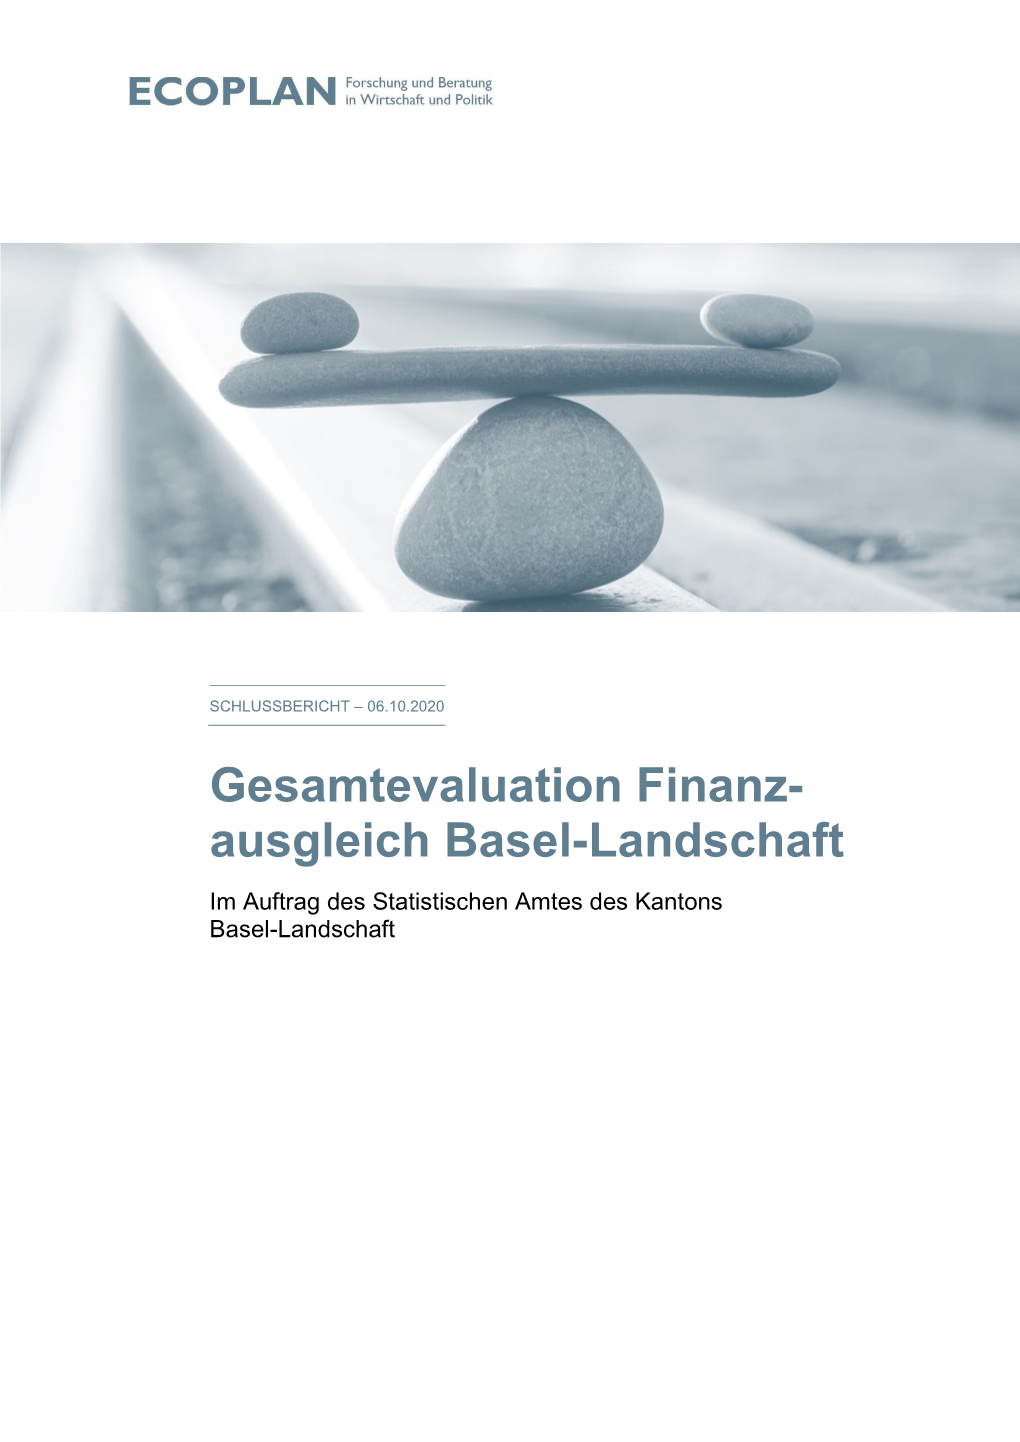 Gesamtevaluation Finanzausgleich Basel-Landschaft 2020